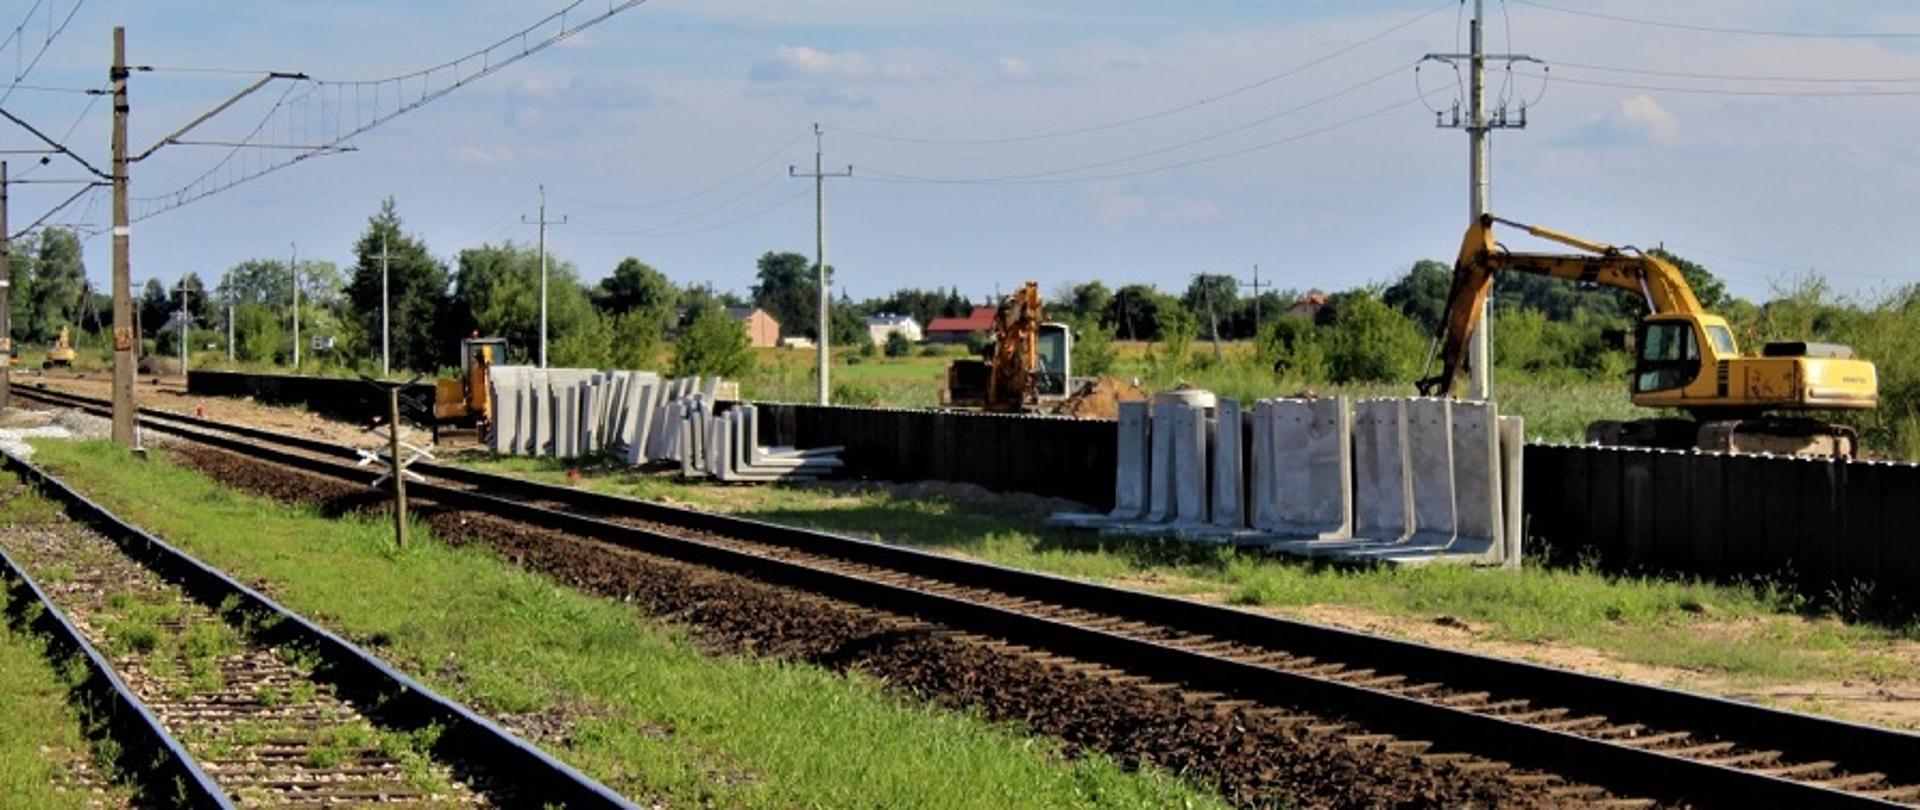 Prace na linii kolejowej między Zgierzem a Łęczycą